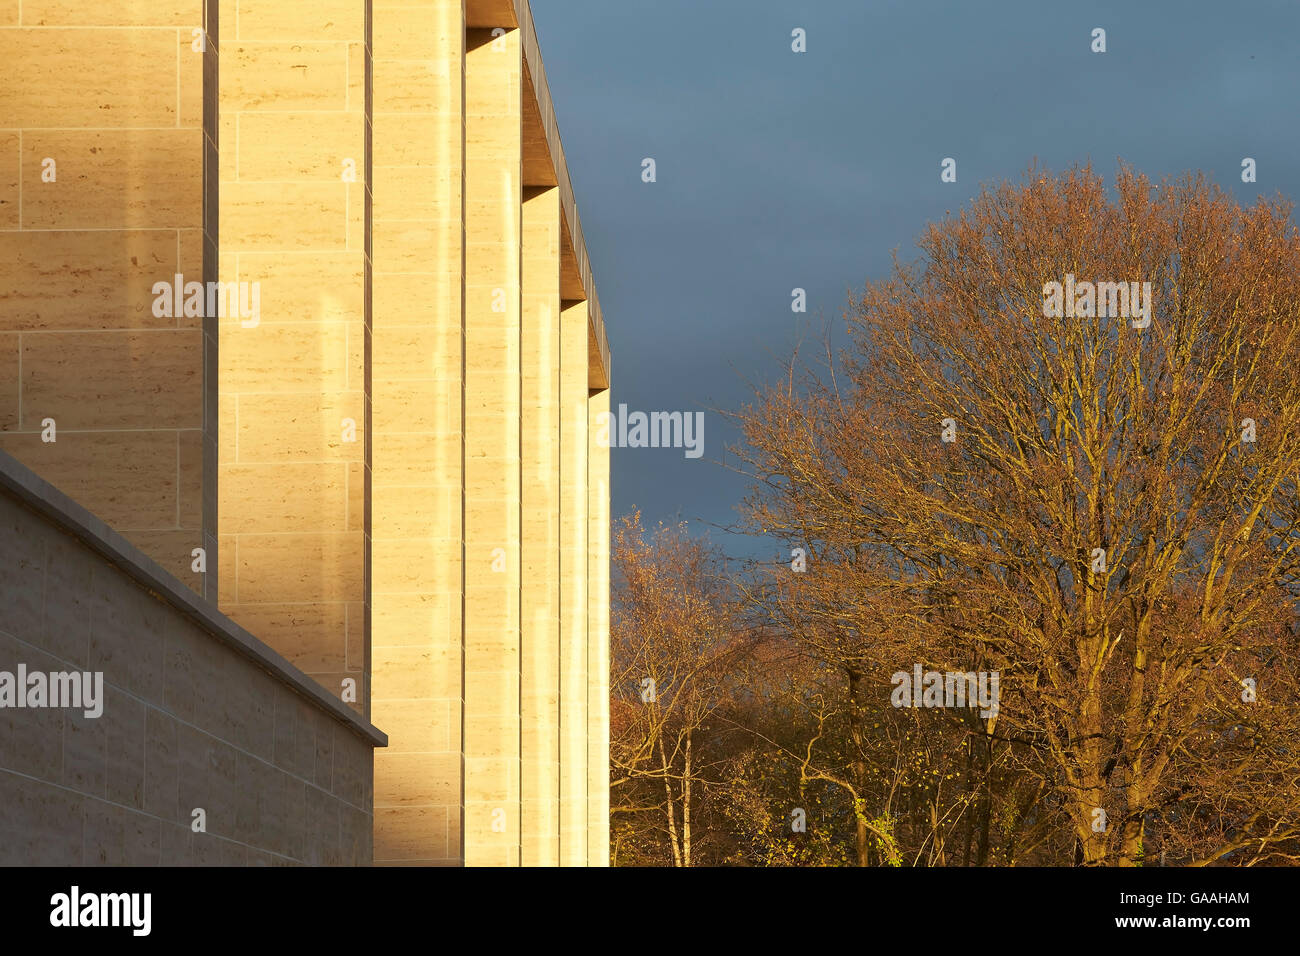 Façade revêtue de pierre en fin d'après-midi la lumière. Suivant - Maison et Jardin Magasins, Southampton, Royaume-Uni. Architecte : Stanton Williams, 2014. Banque D'Images